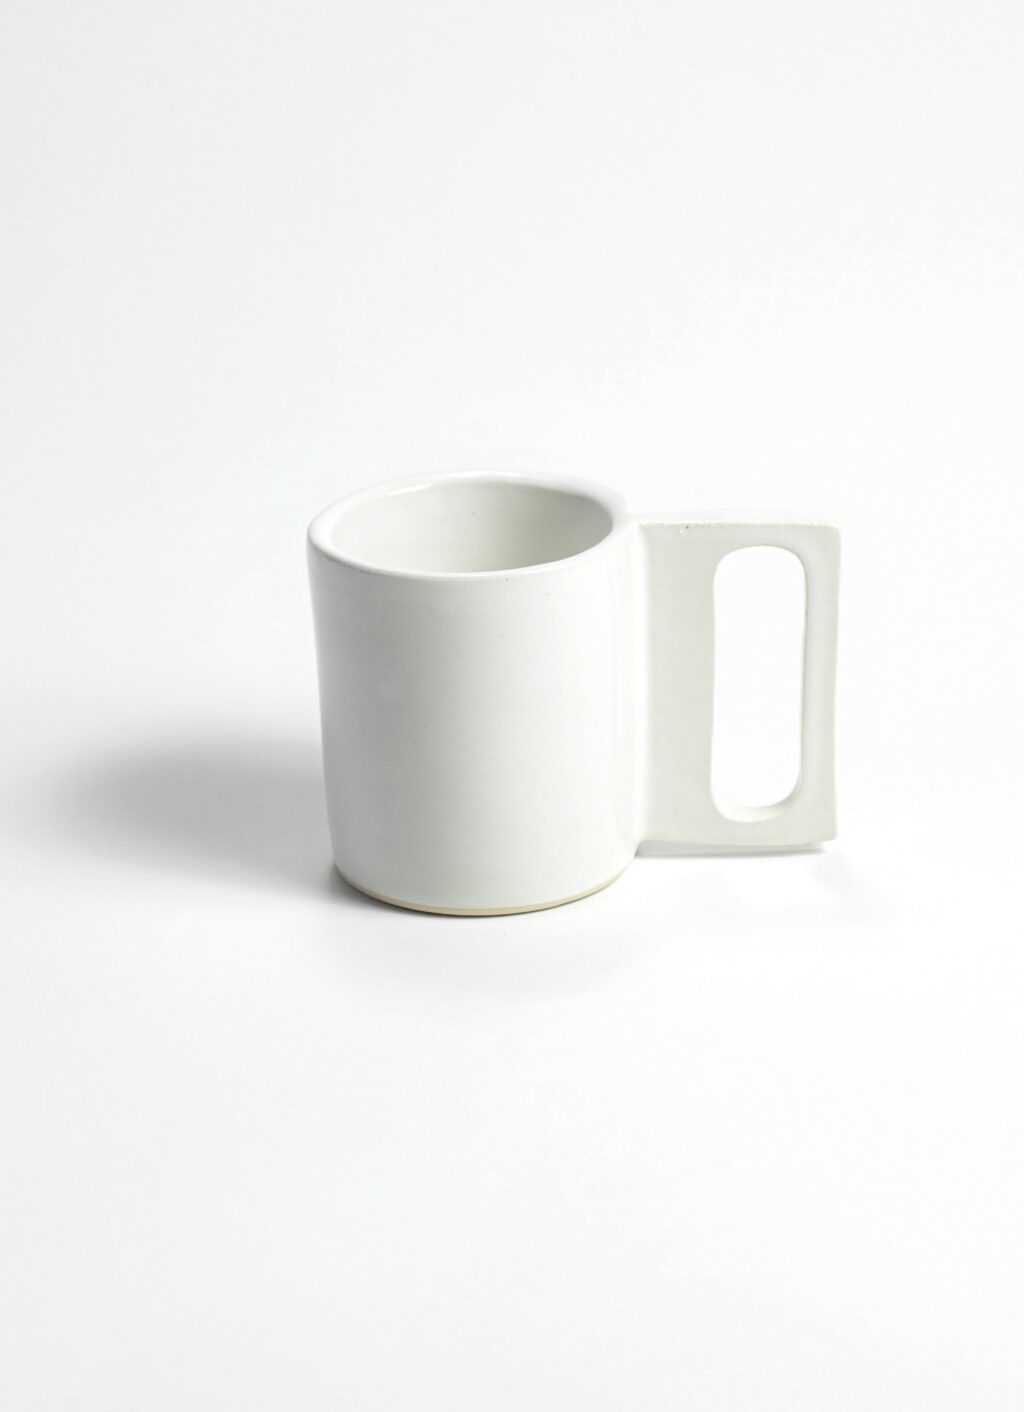 Guten Co - Gloss White Geo Mug - Handmade Porcelain